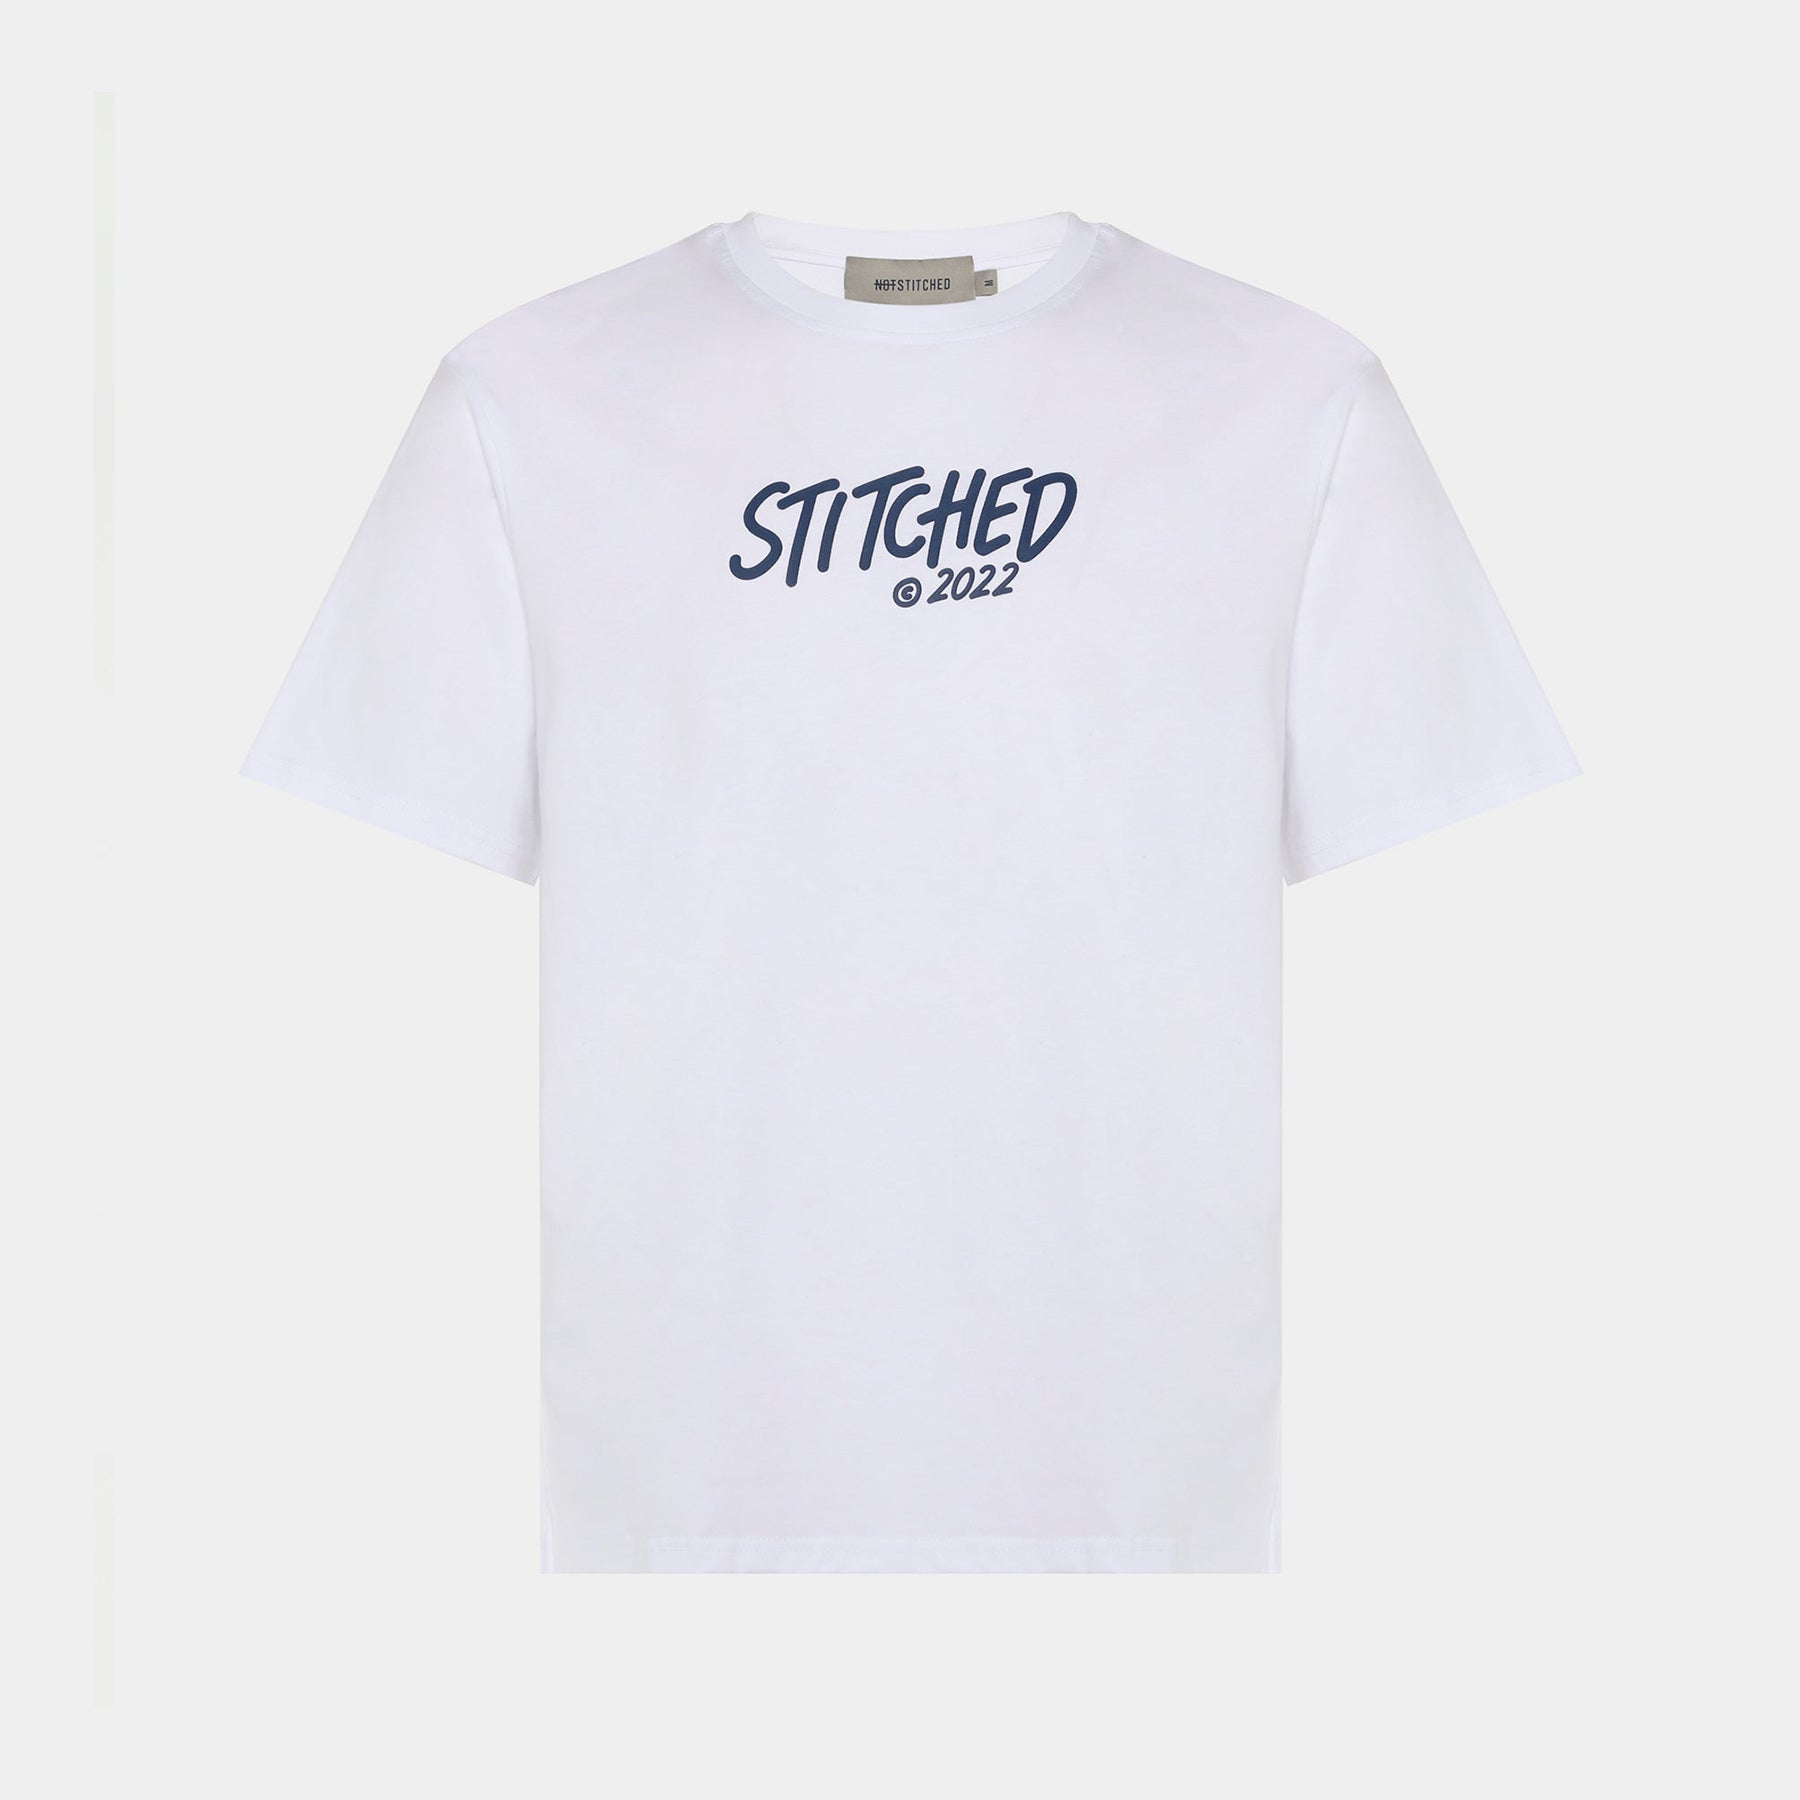 Stitched Tag T-shirt